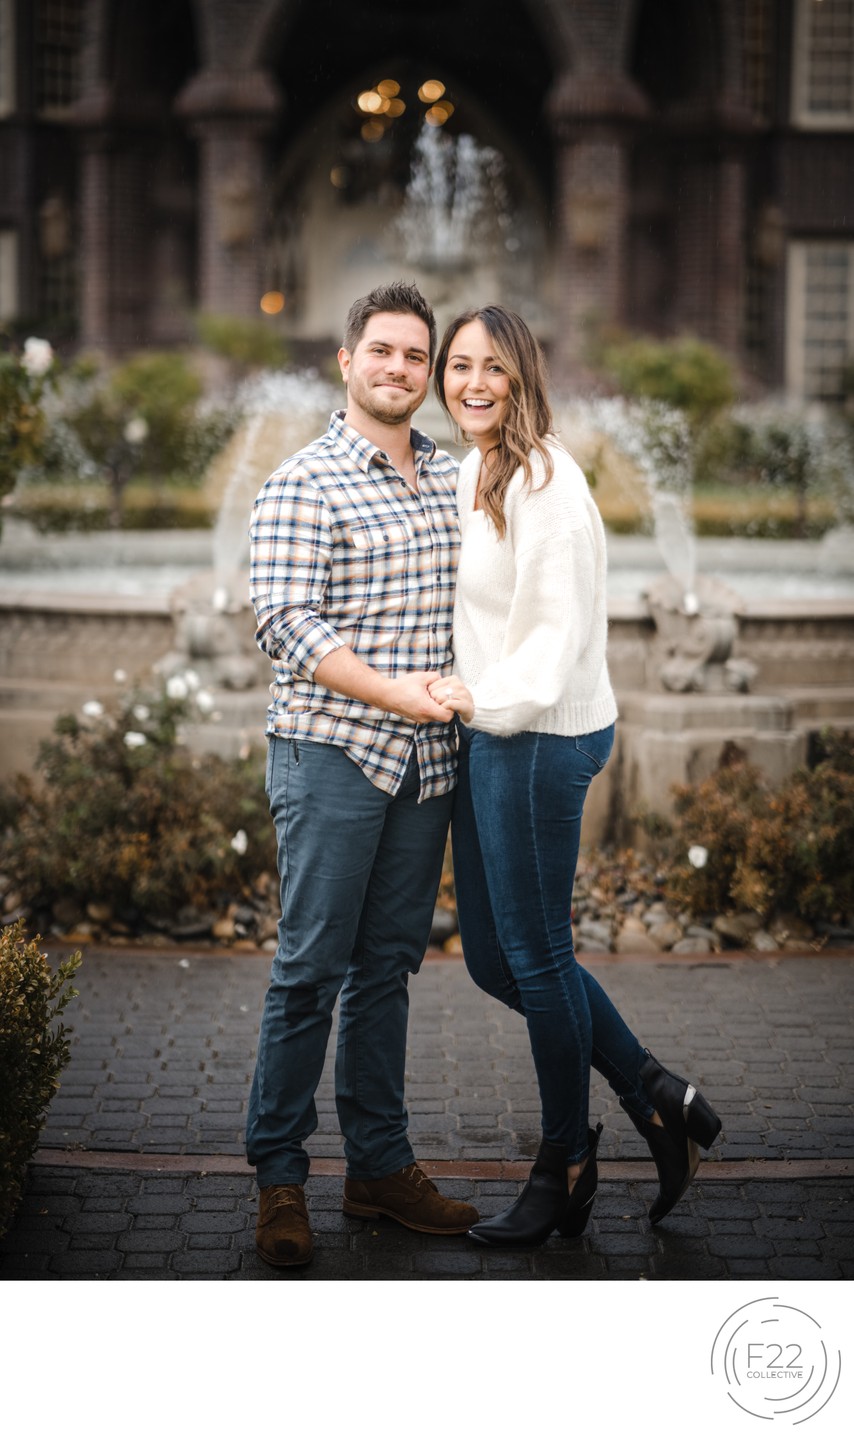 Sacramento Wedding Photographers at Ledson Proposal